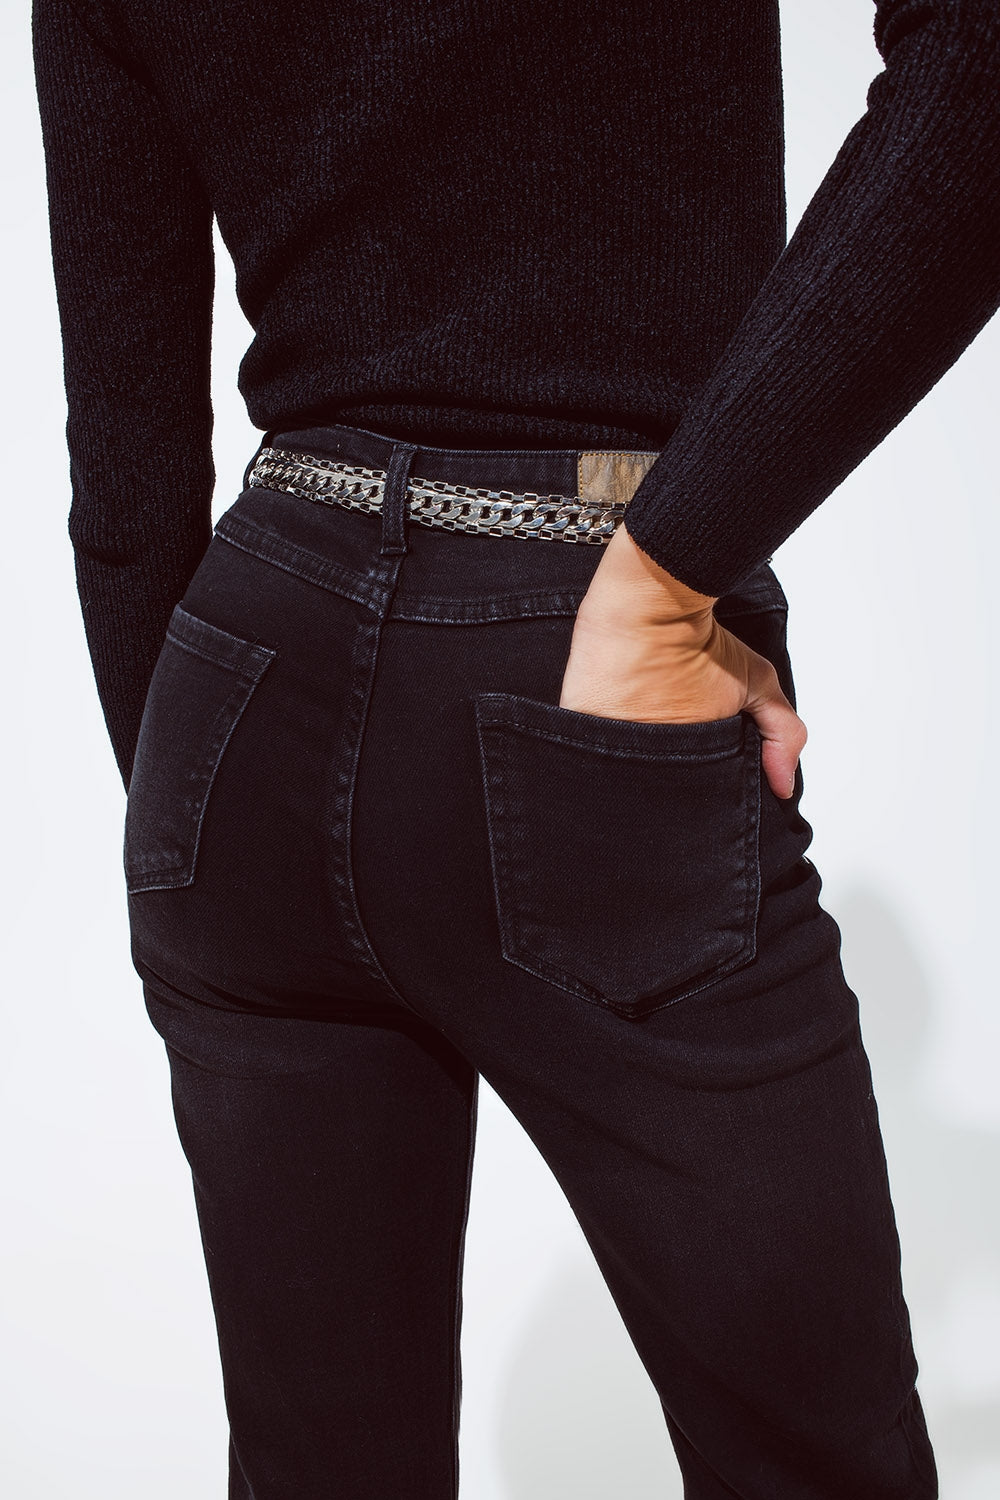 Jeans dritti neri con dettagli in strass argentati